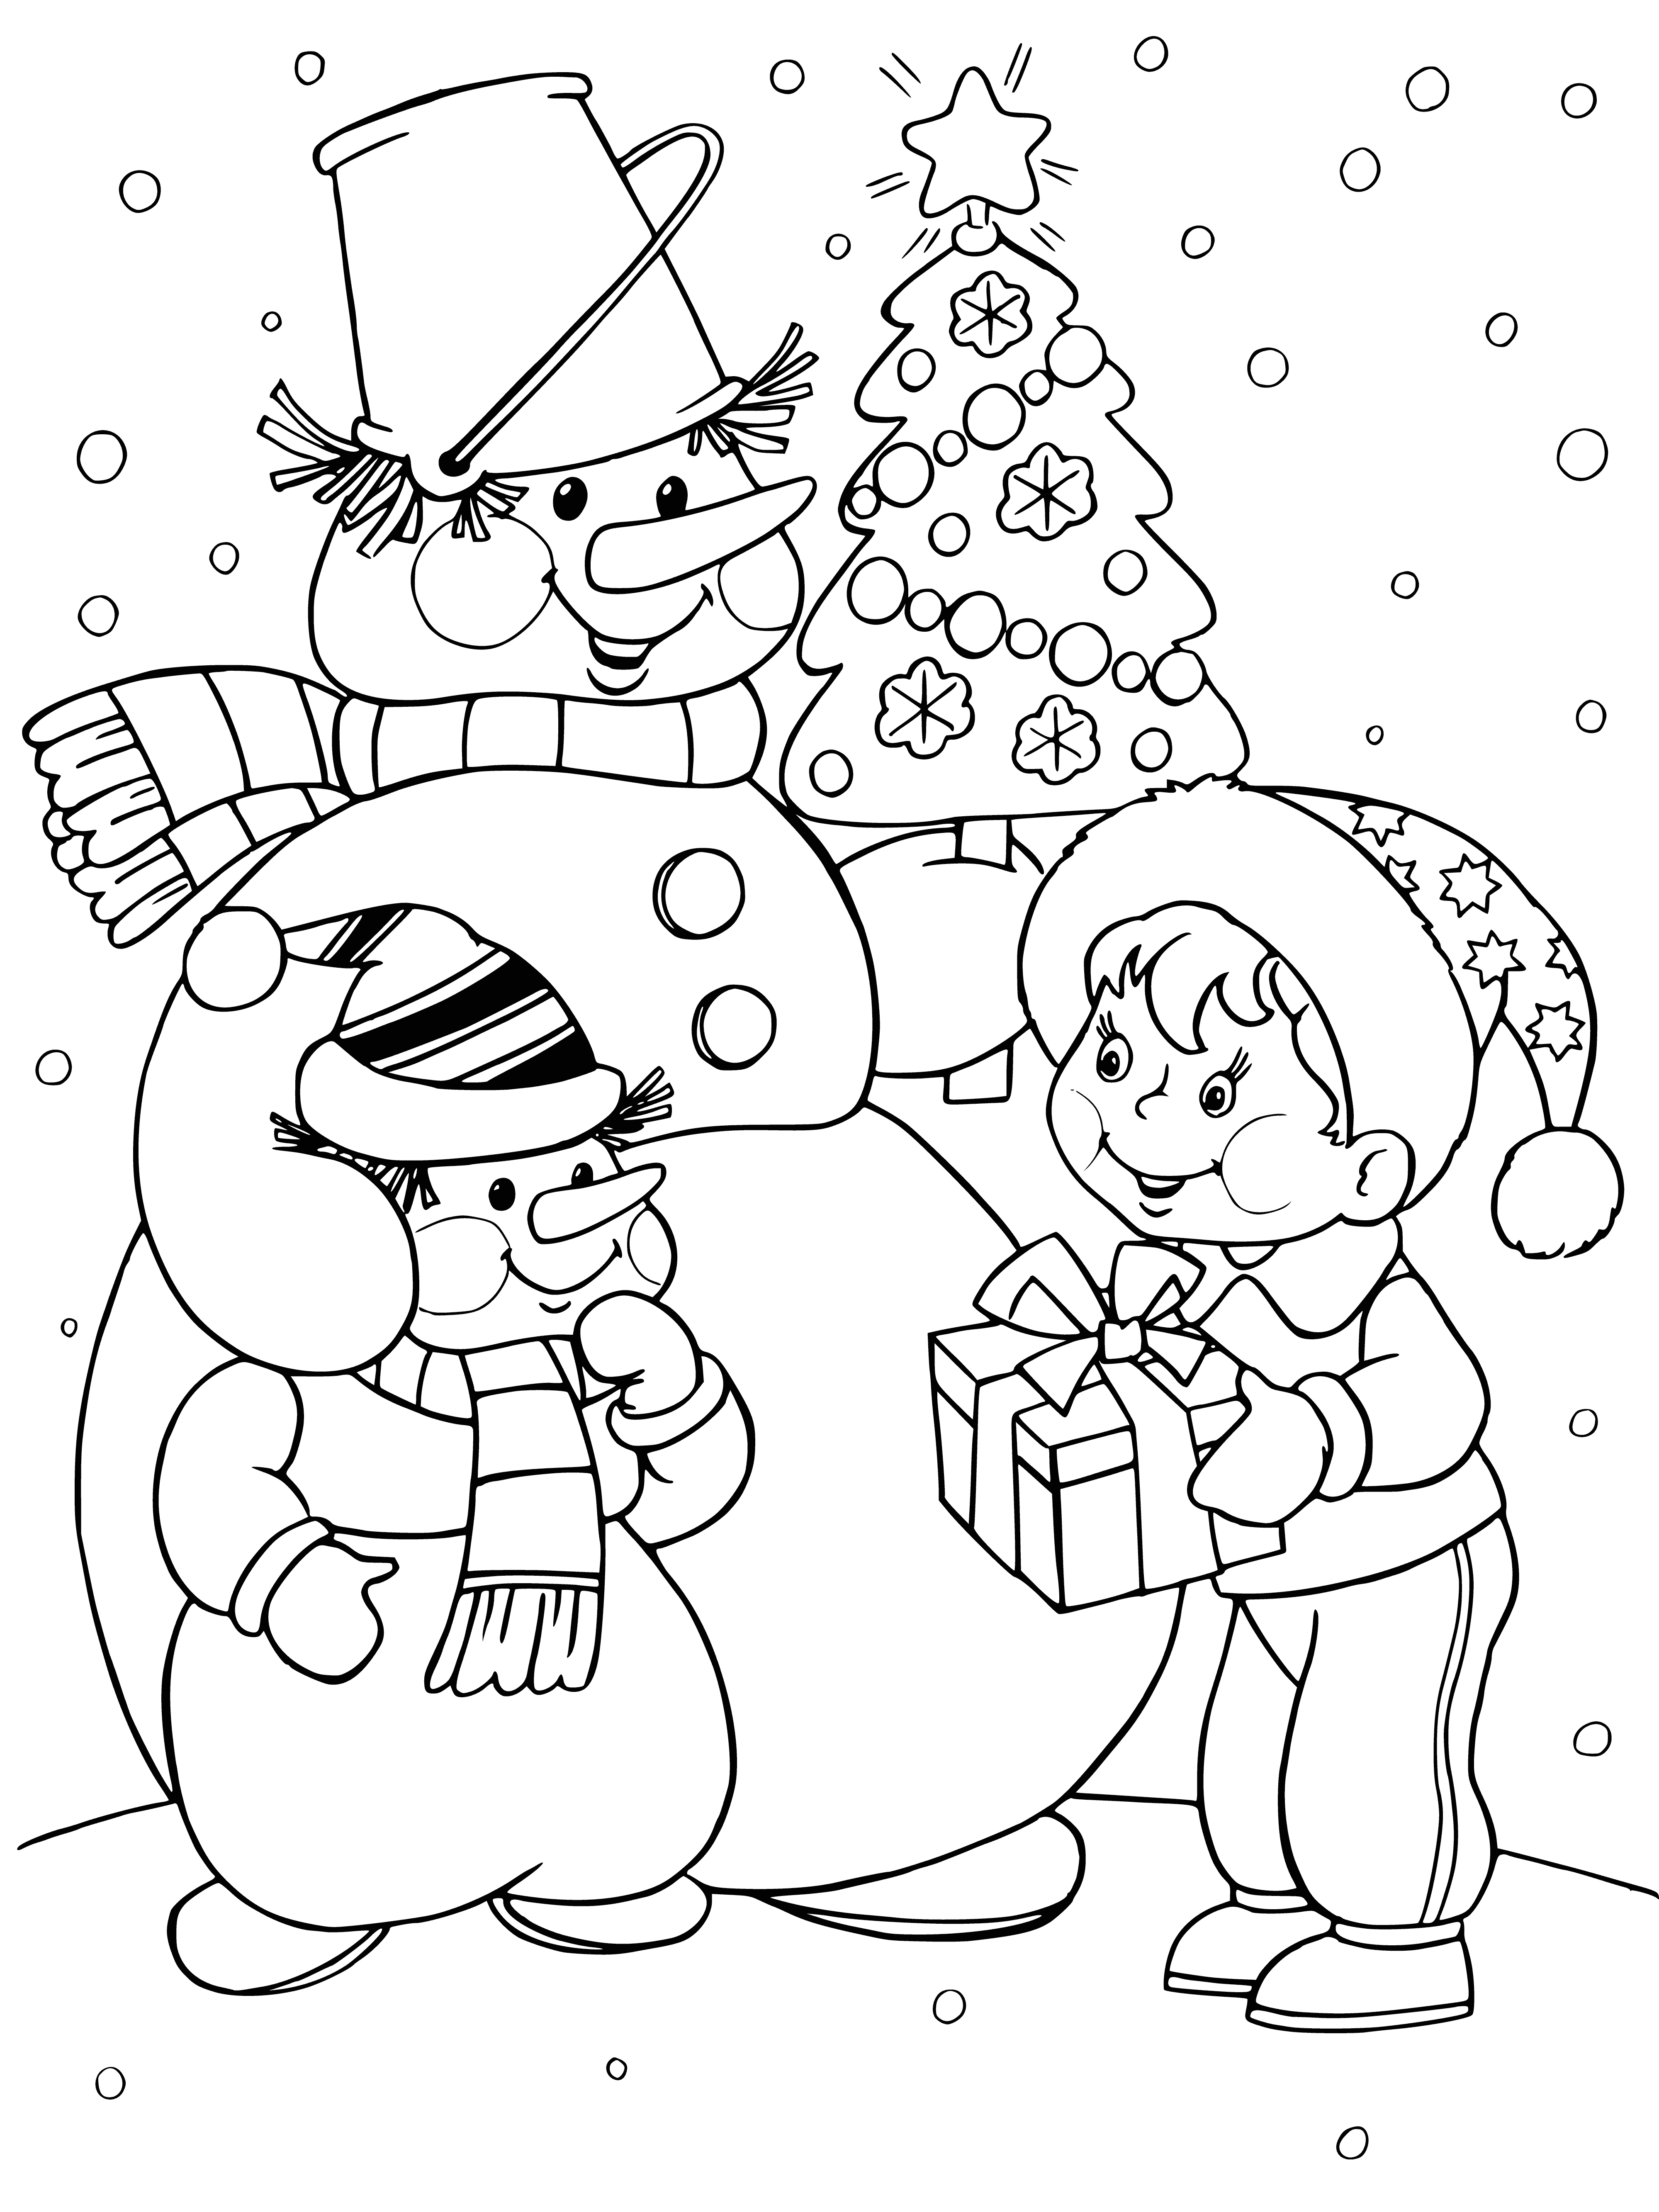 Bonhomme de neige offrant un cadeau coloriage